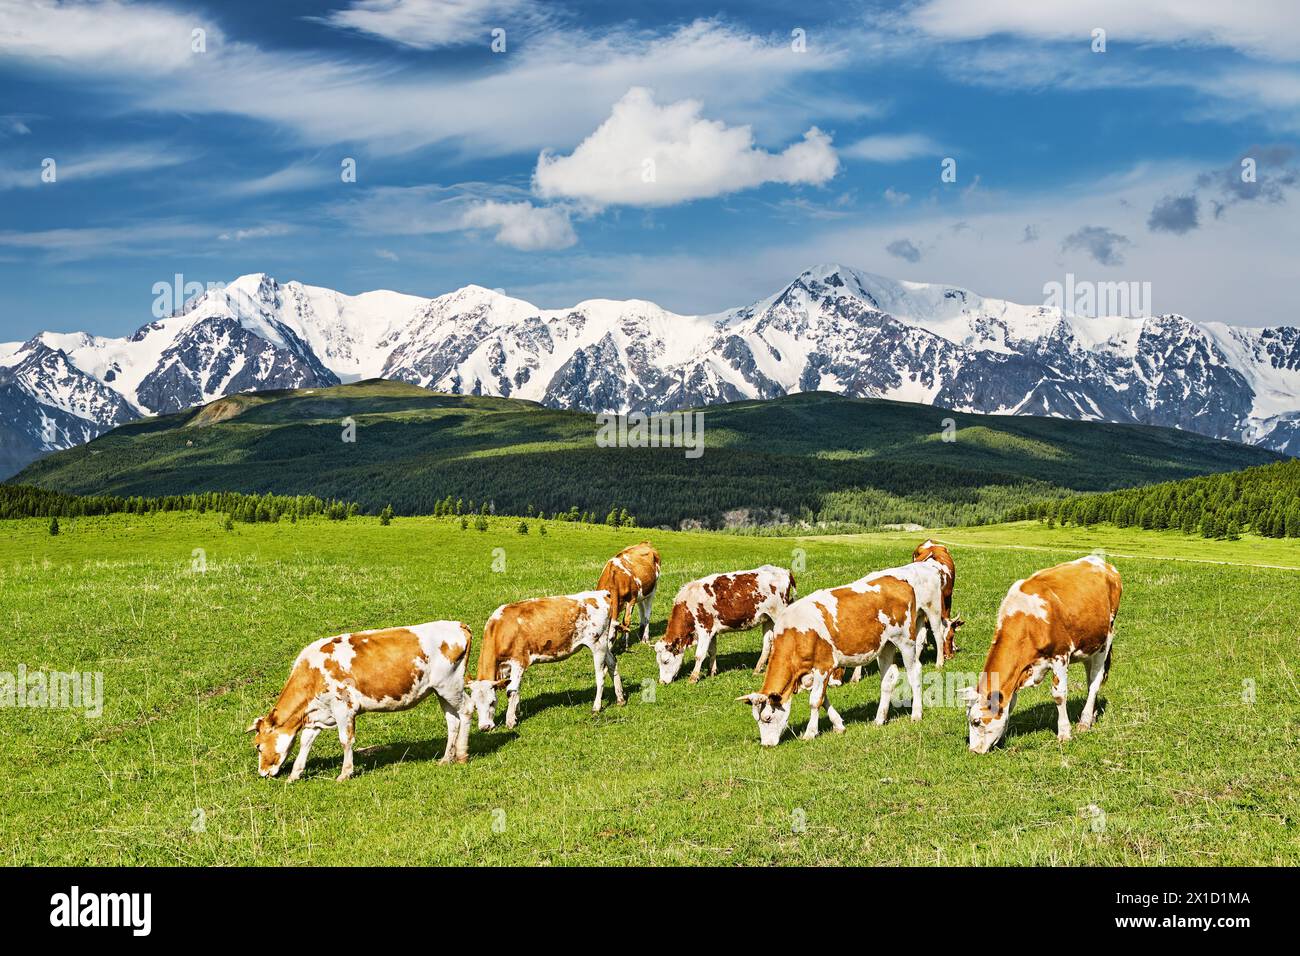 Splendido paesaggio con montagne innevate e mucche da pascolo su un campo verde Foto Stock